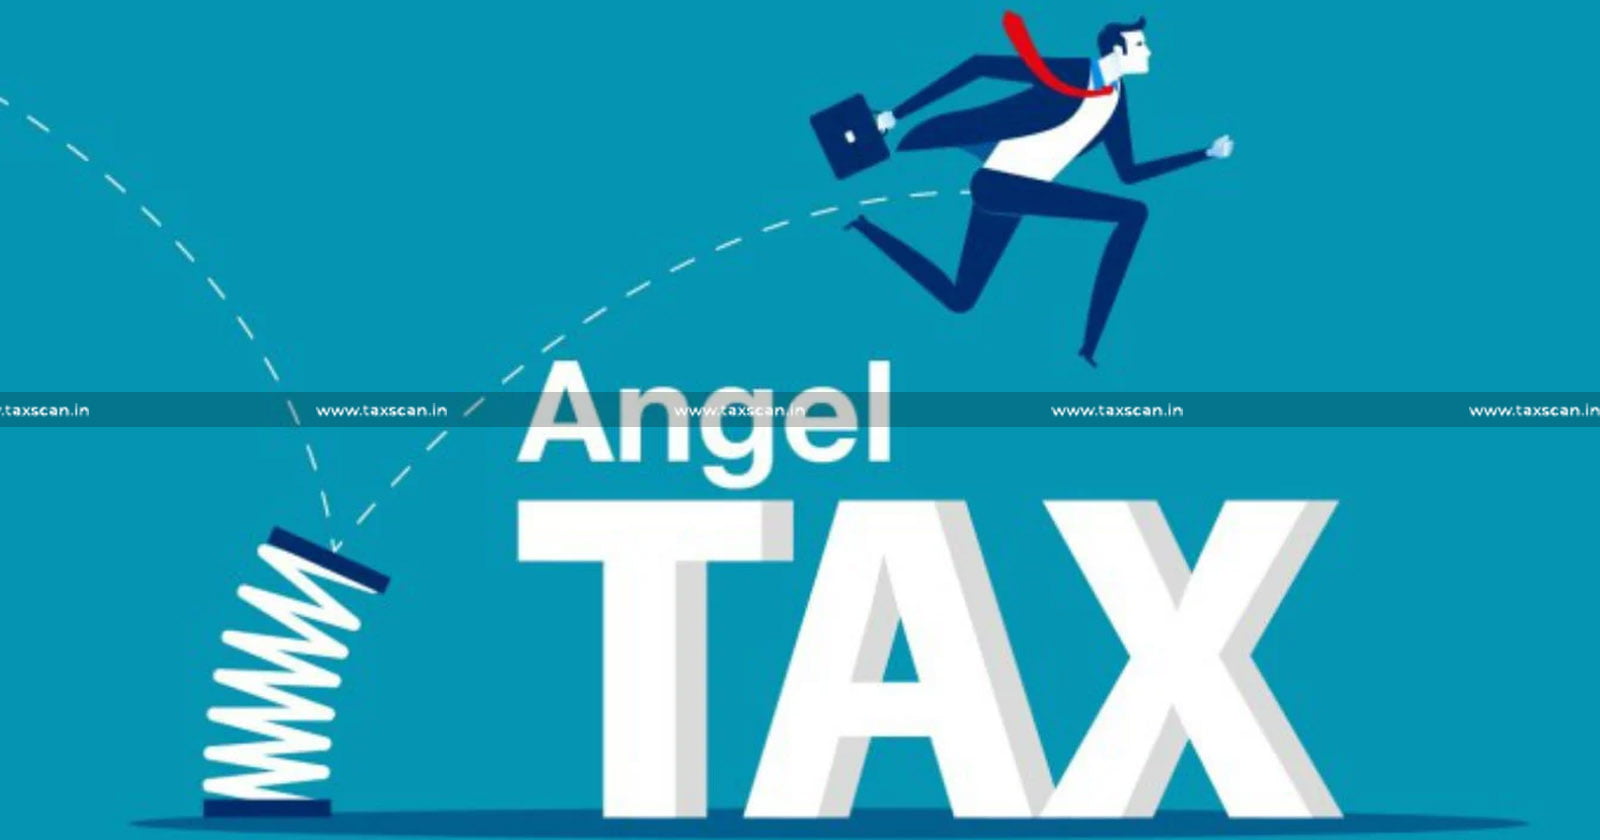 Angel Tax - Analysis of Angel Tax - Angel Tax analysis - Tax news - taxscan